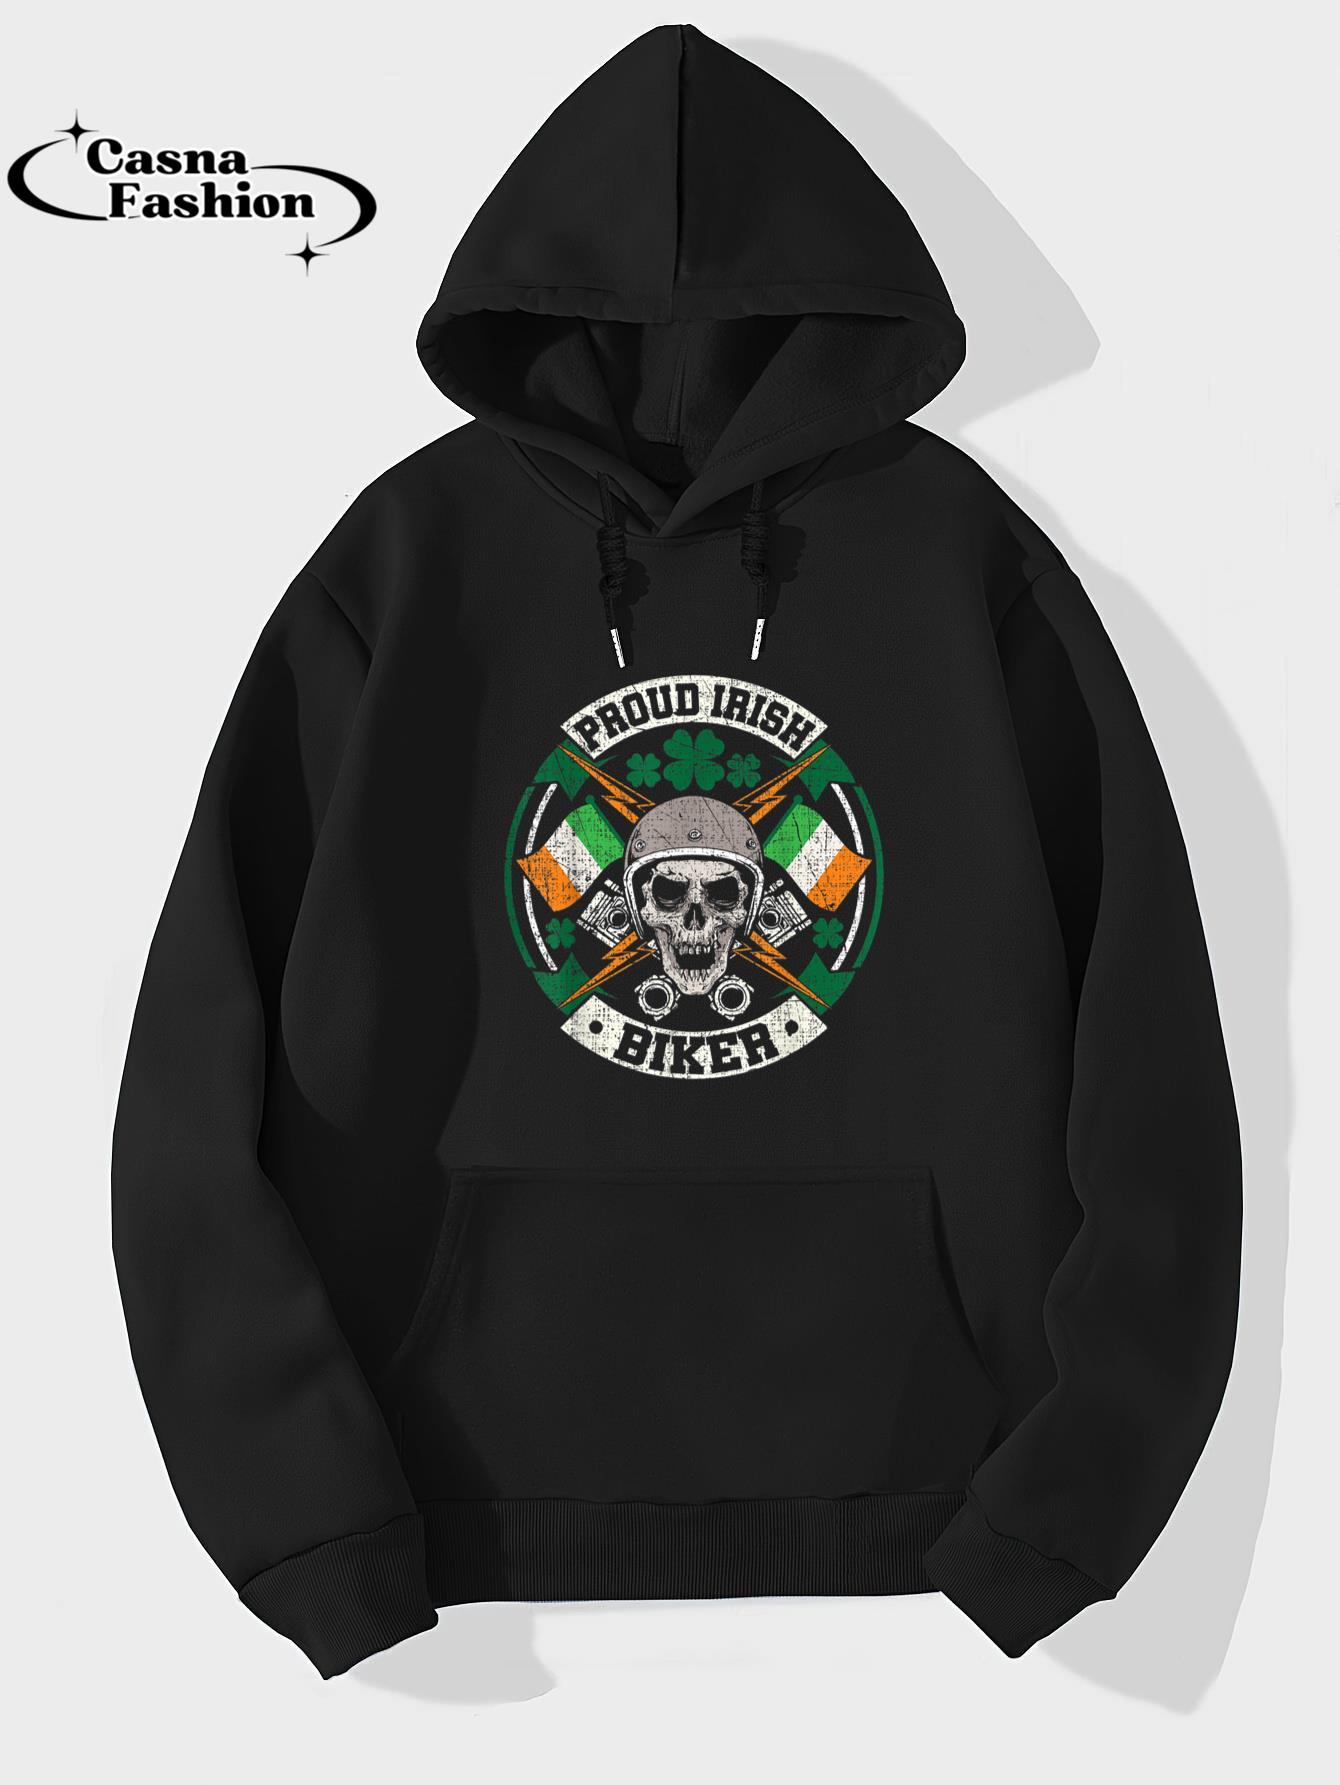 casnafashion_Hoodie_Motorcycle Proud Irish Biker Distressed St. Patricks Day T-Shirt_hoodie_black hoodie